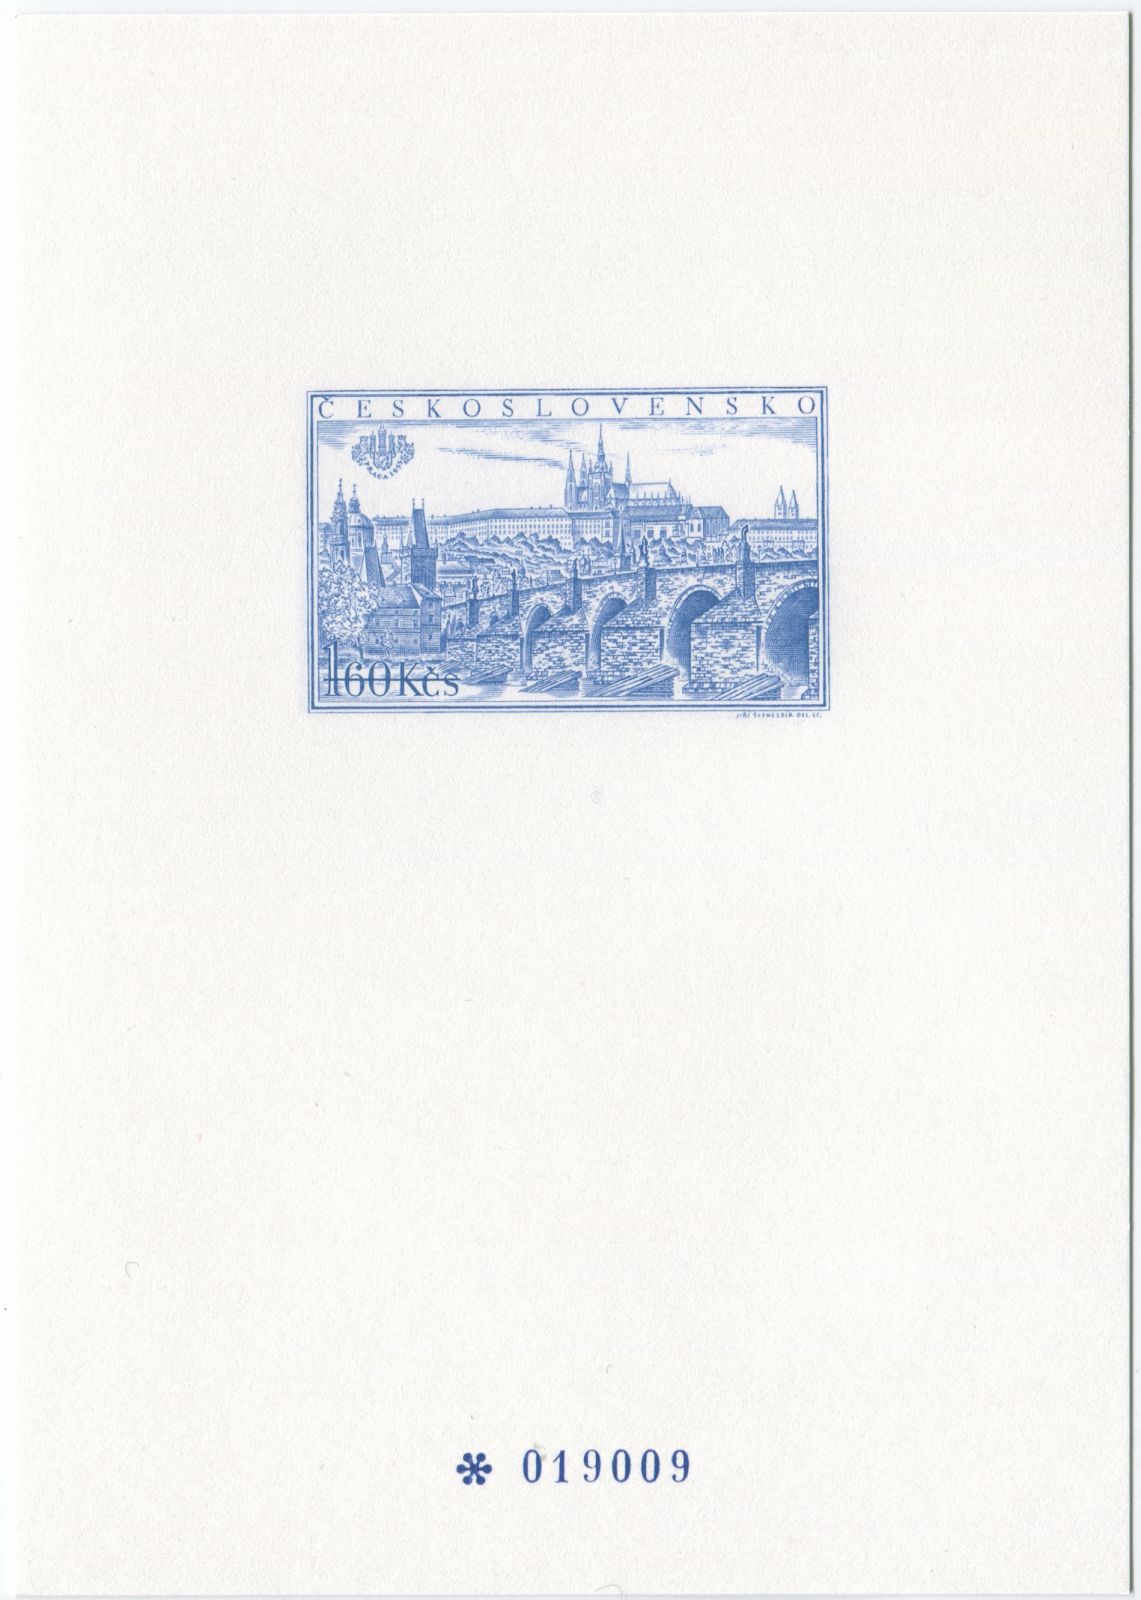 (1998) PT 8 - příležitostný tisk - příloha katalogu výstavy Praga 98